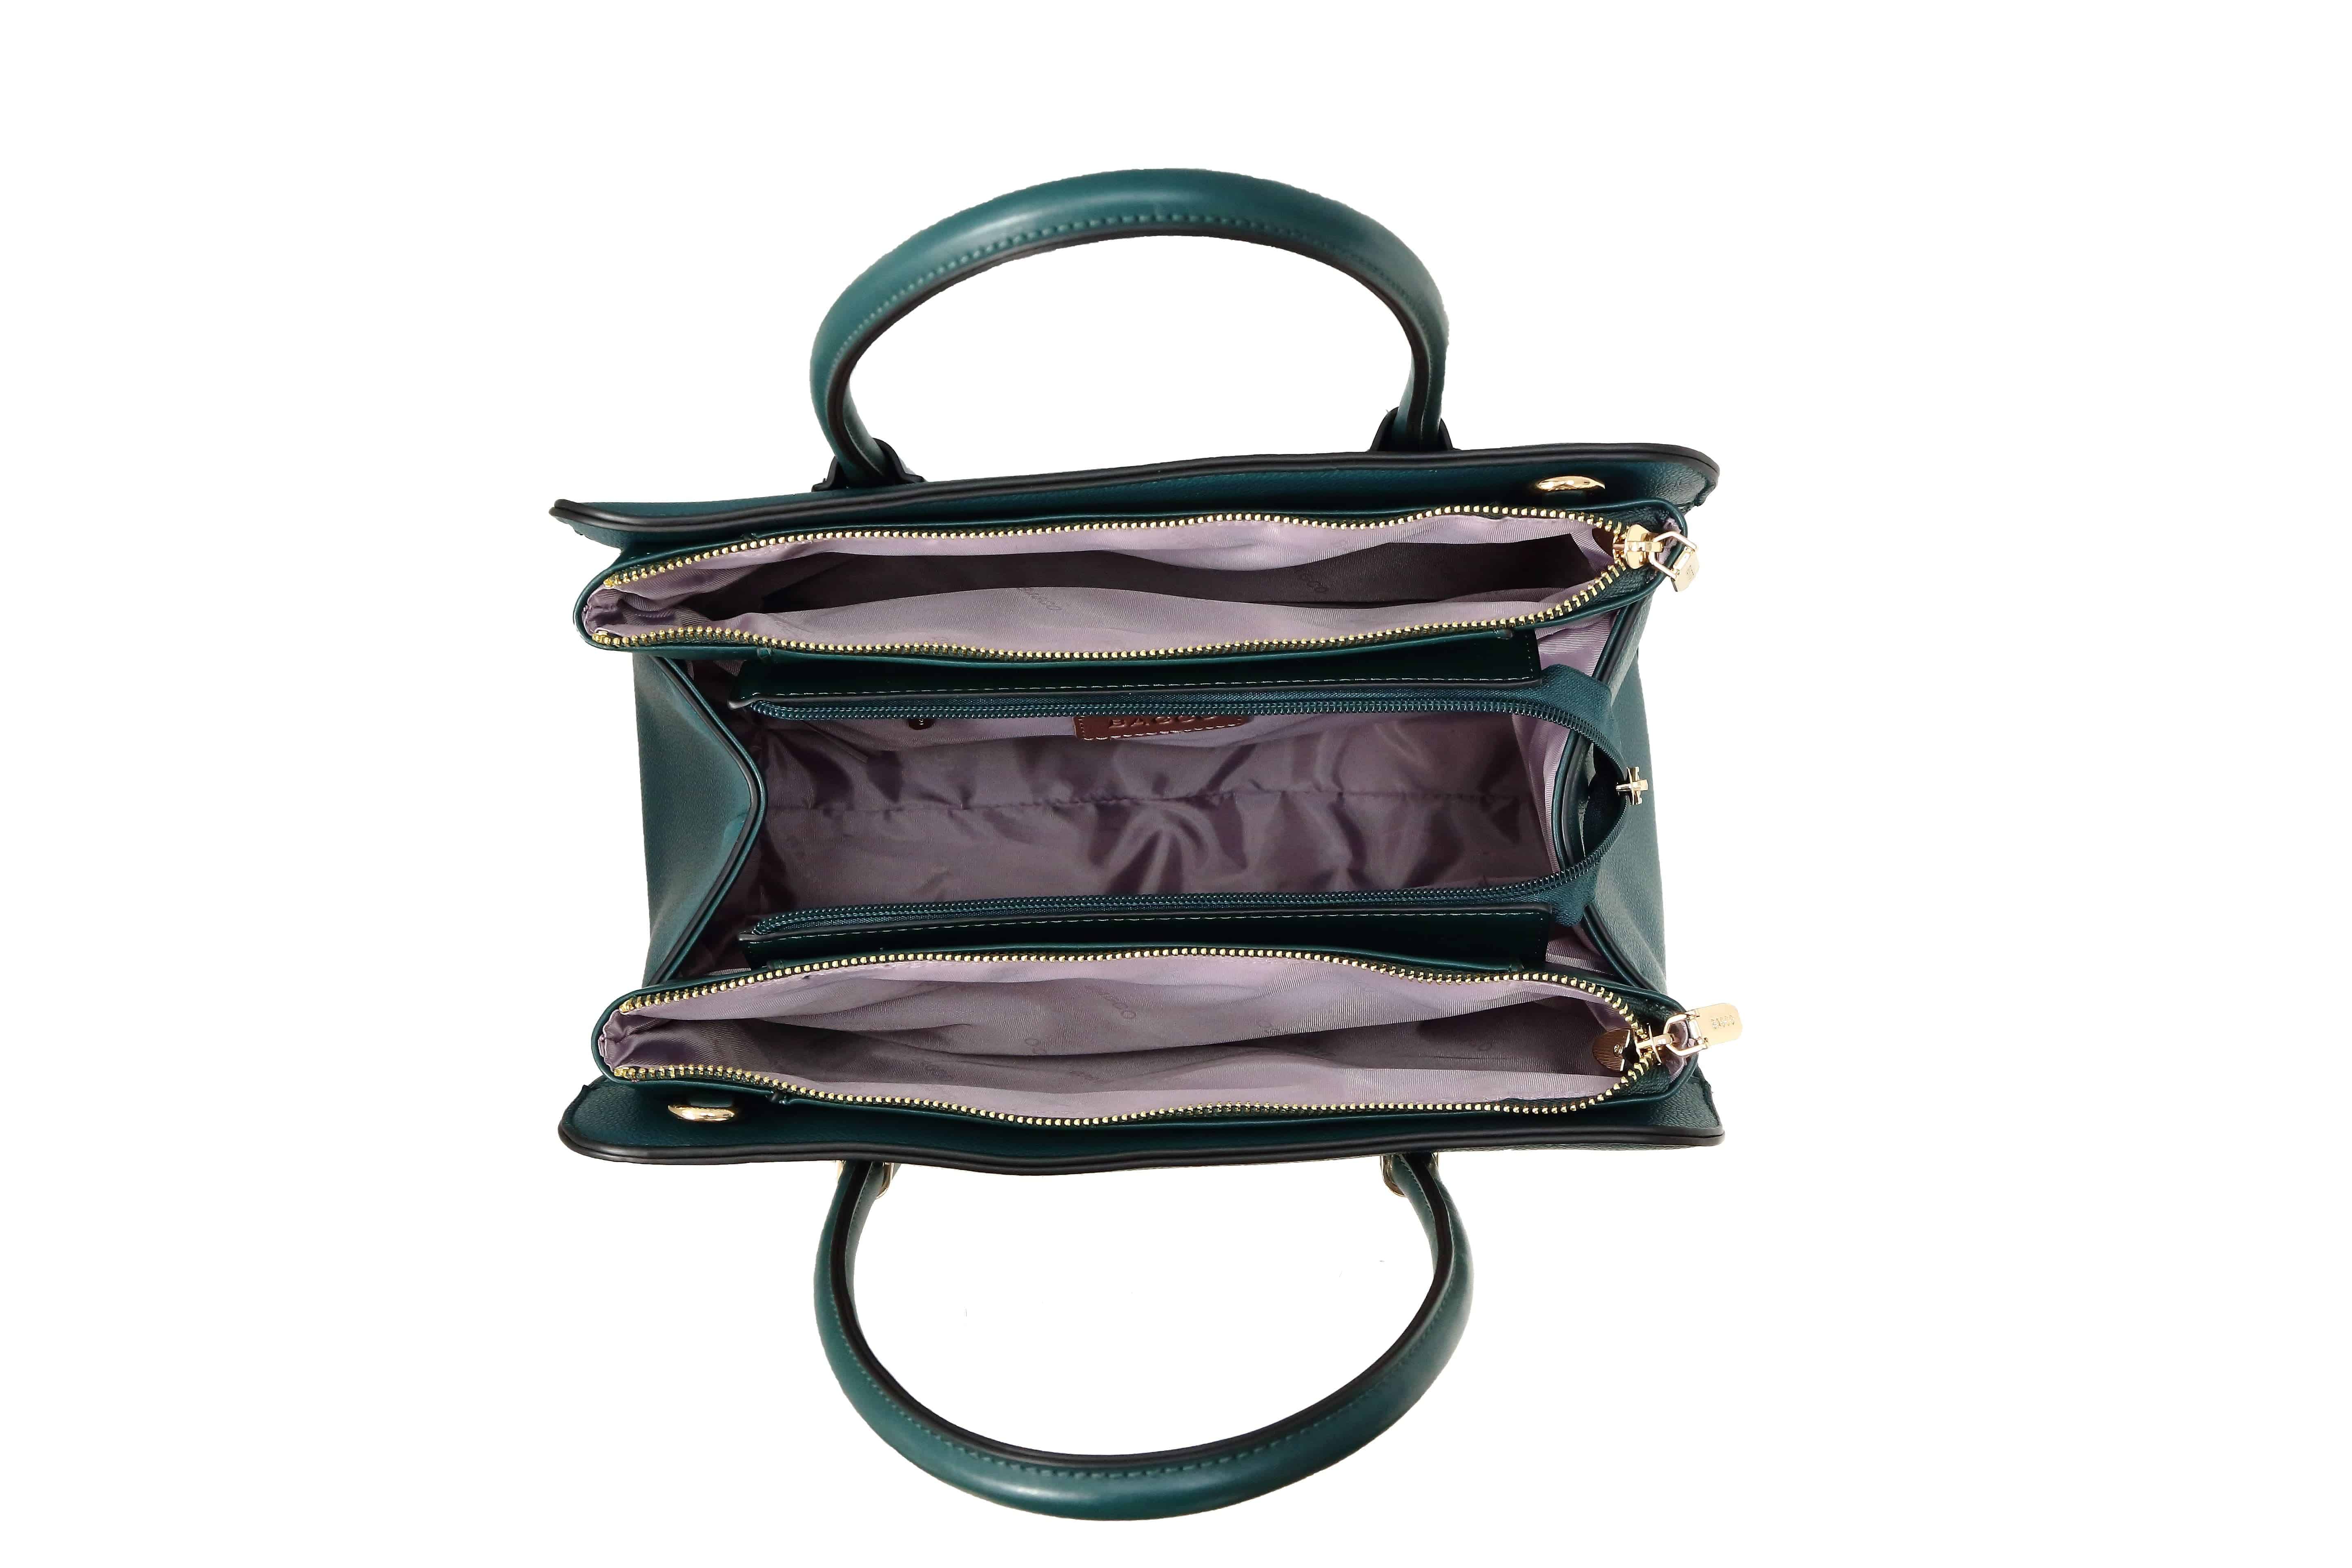 حقيبة يد نسائية باللون الاسود متوسطة الحجم بيد مريحة وبملمس وتصميم مميز. - KSA